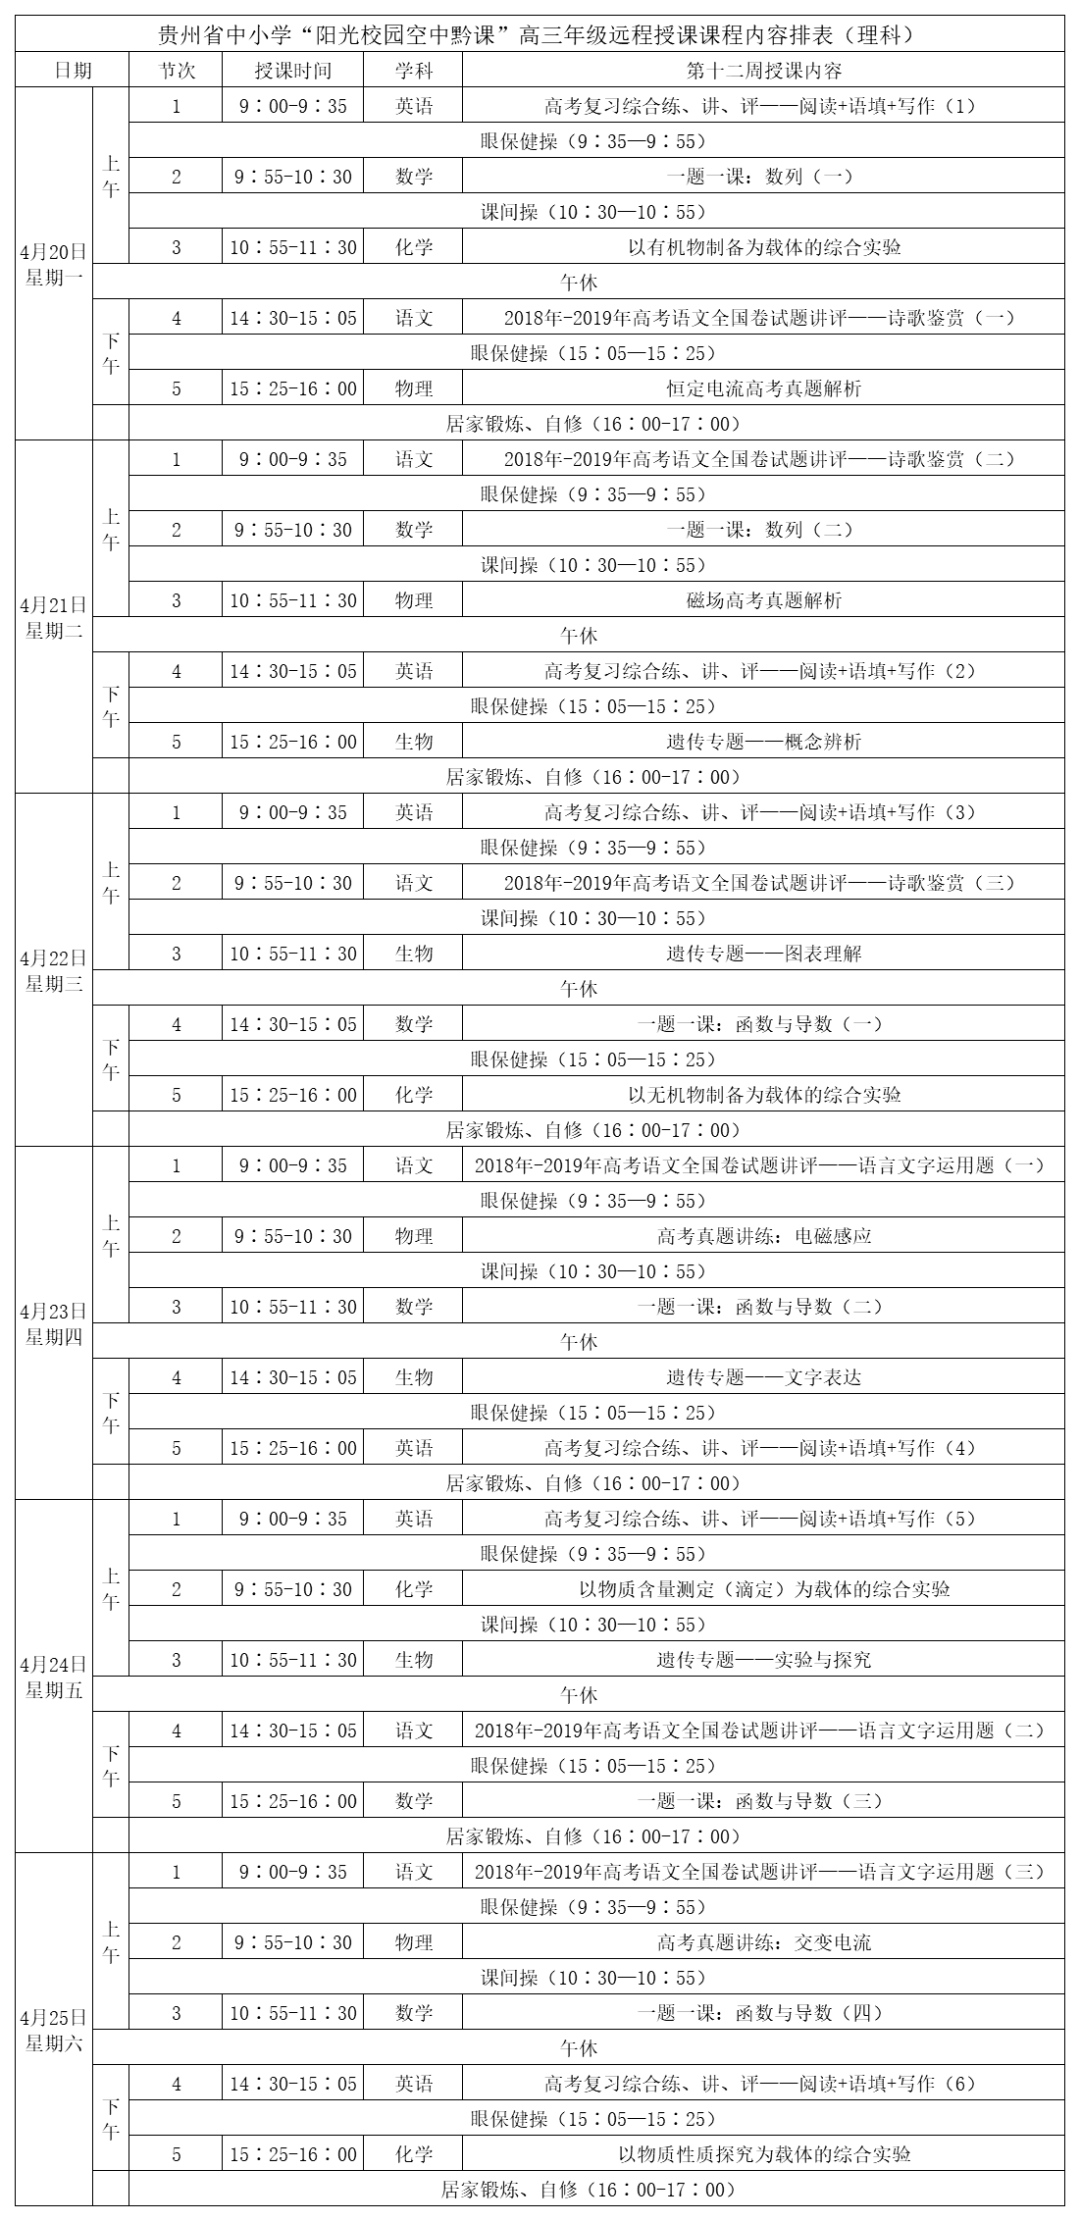 贵州中小学“空中课堂”课程表完整版公布（4月20日8